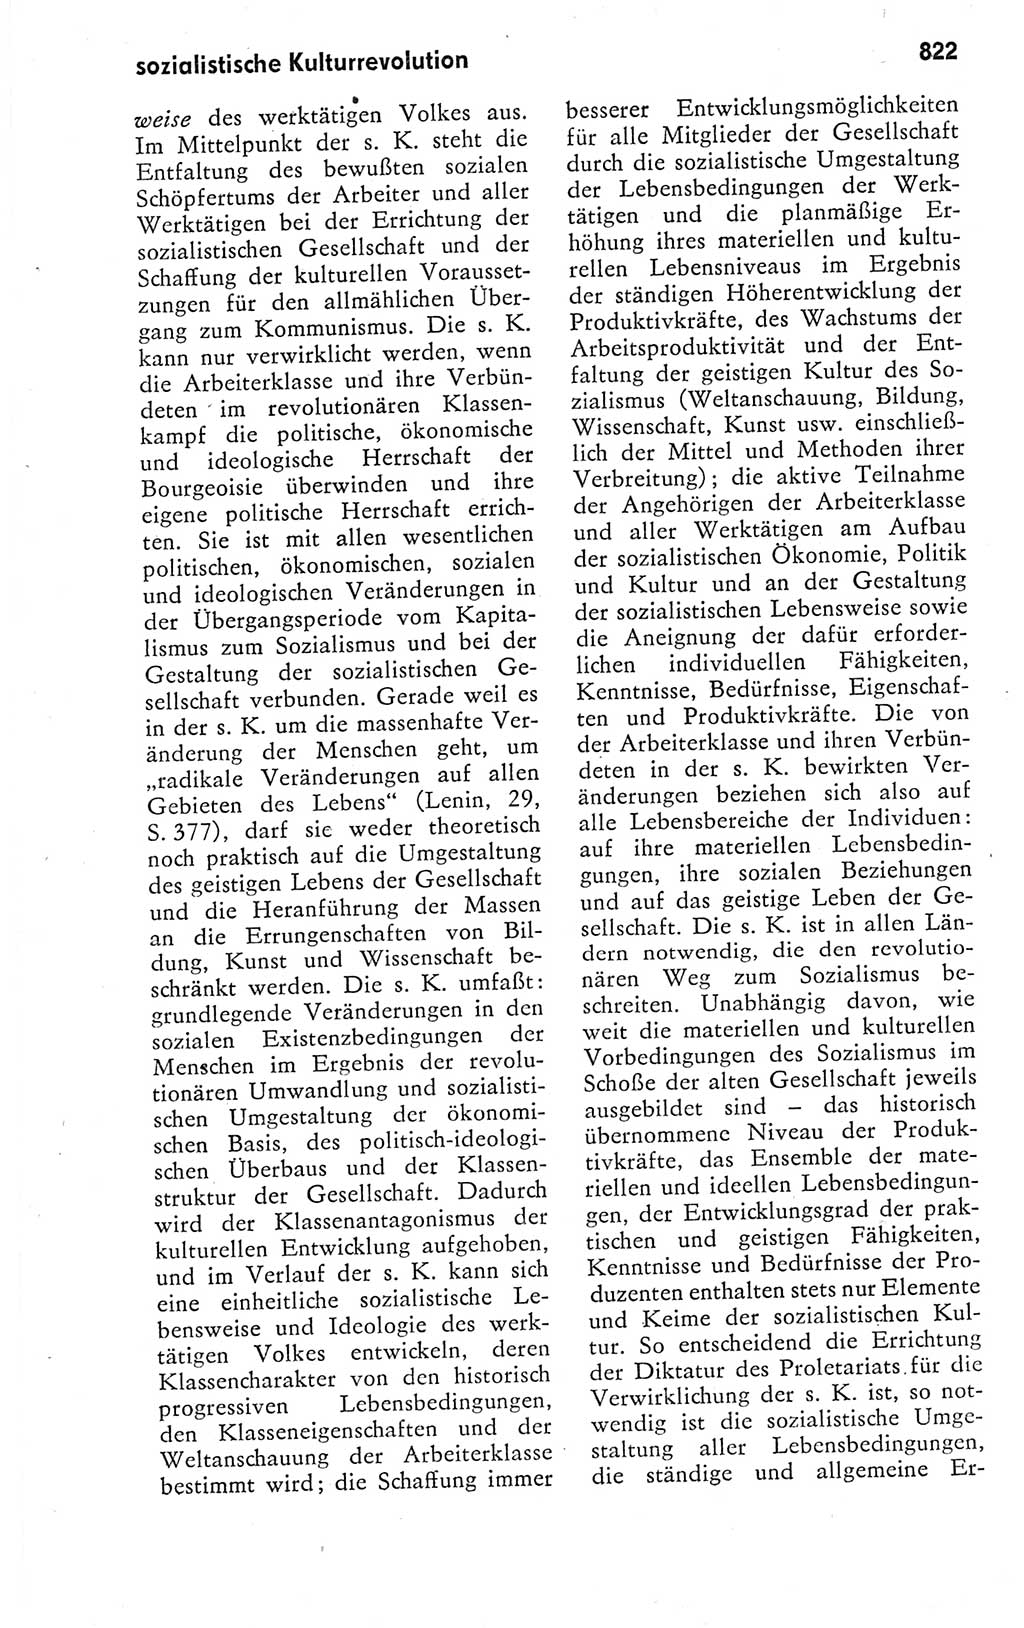 Kleines politisches Wörterbuch [Deutsche Demokratische Republik (DDR)] 1978, Seite 822 (Kl. pol. Wb. DDR 1978, S. 822)